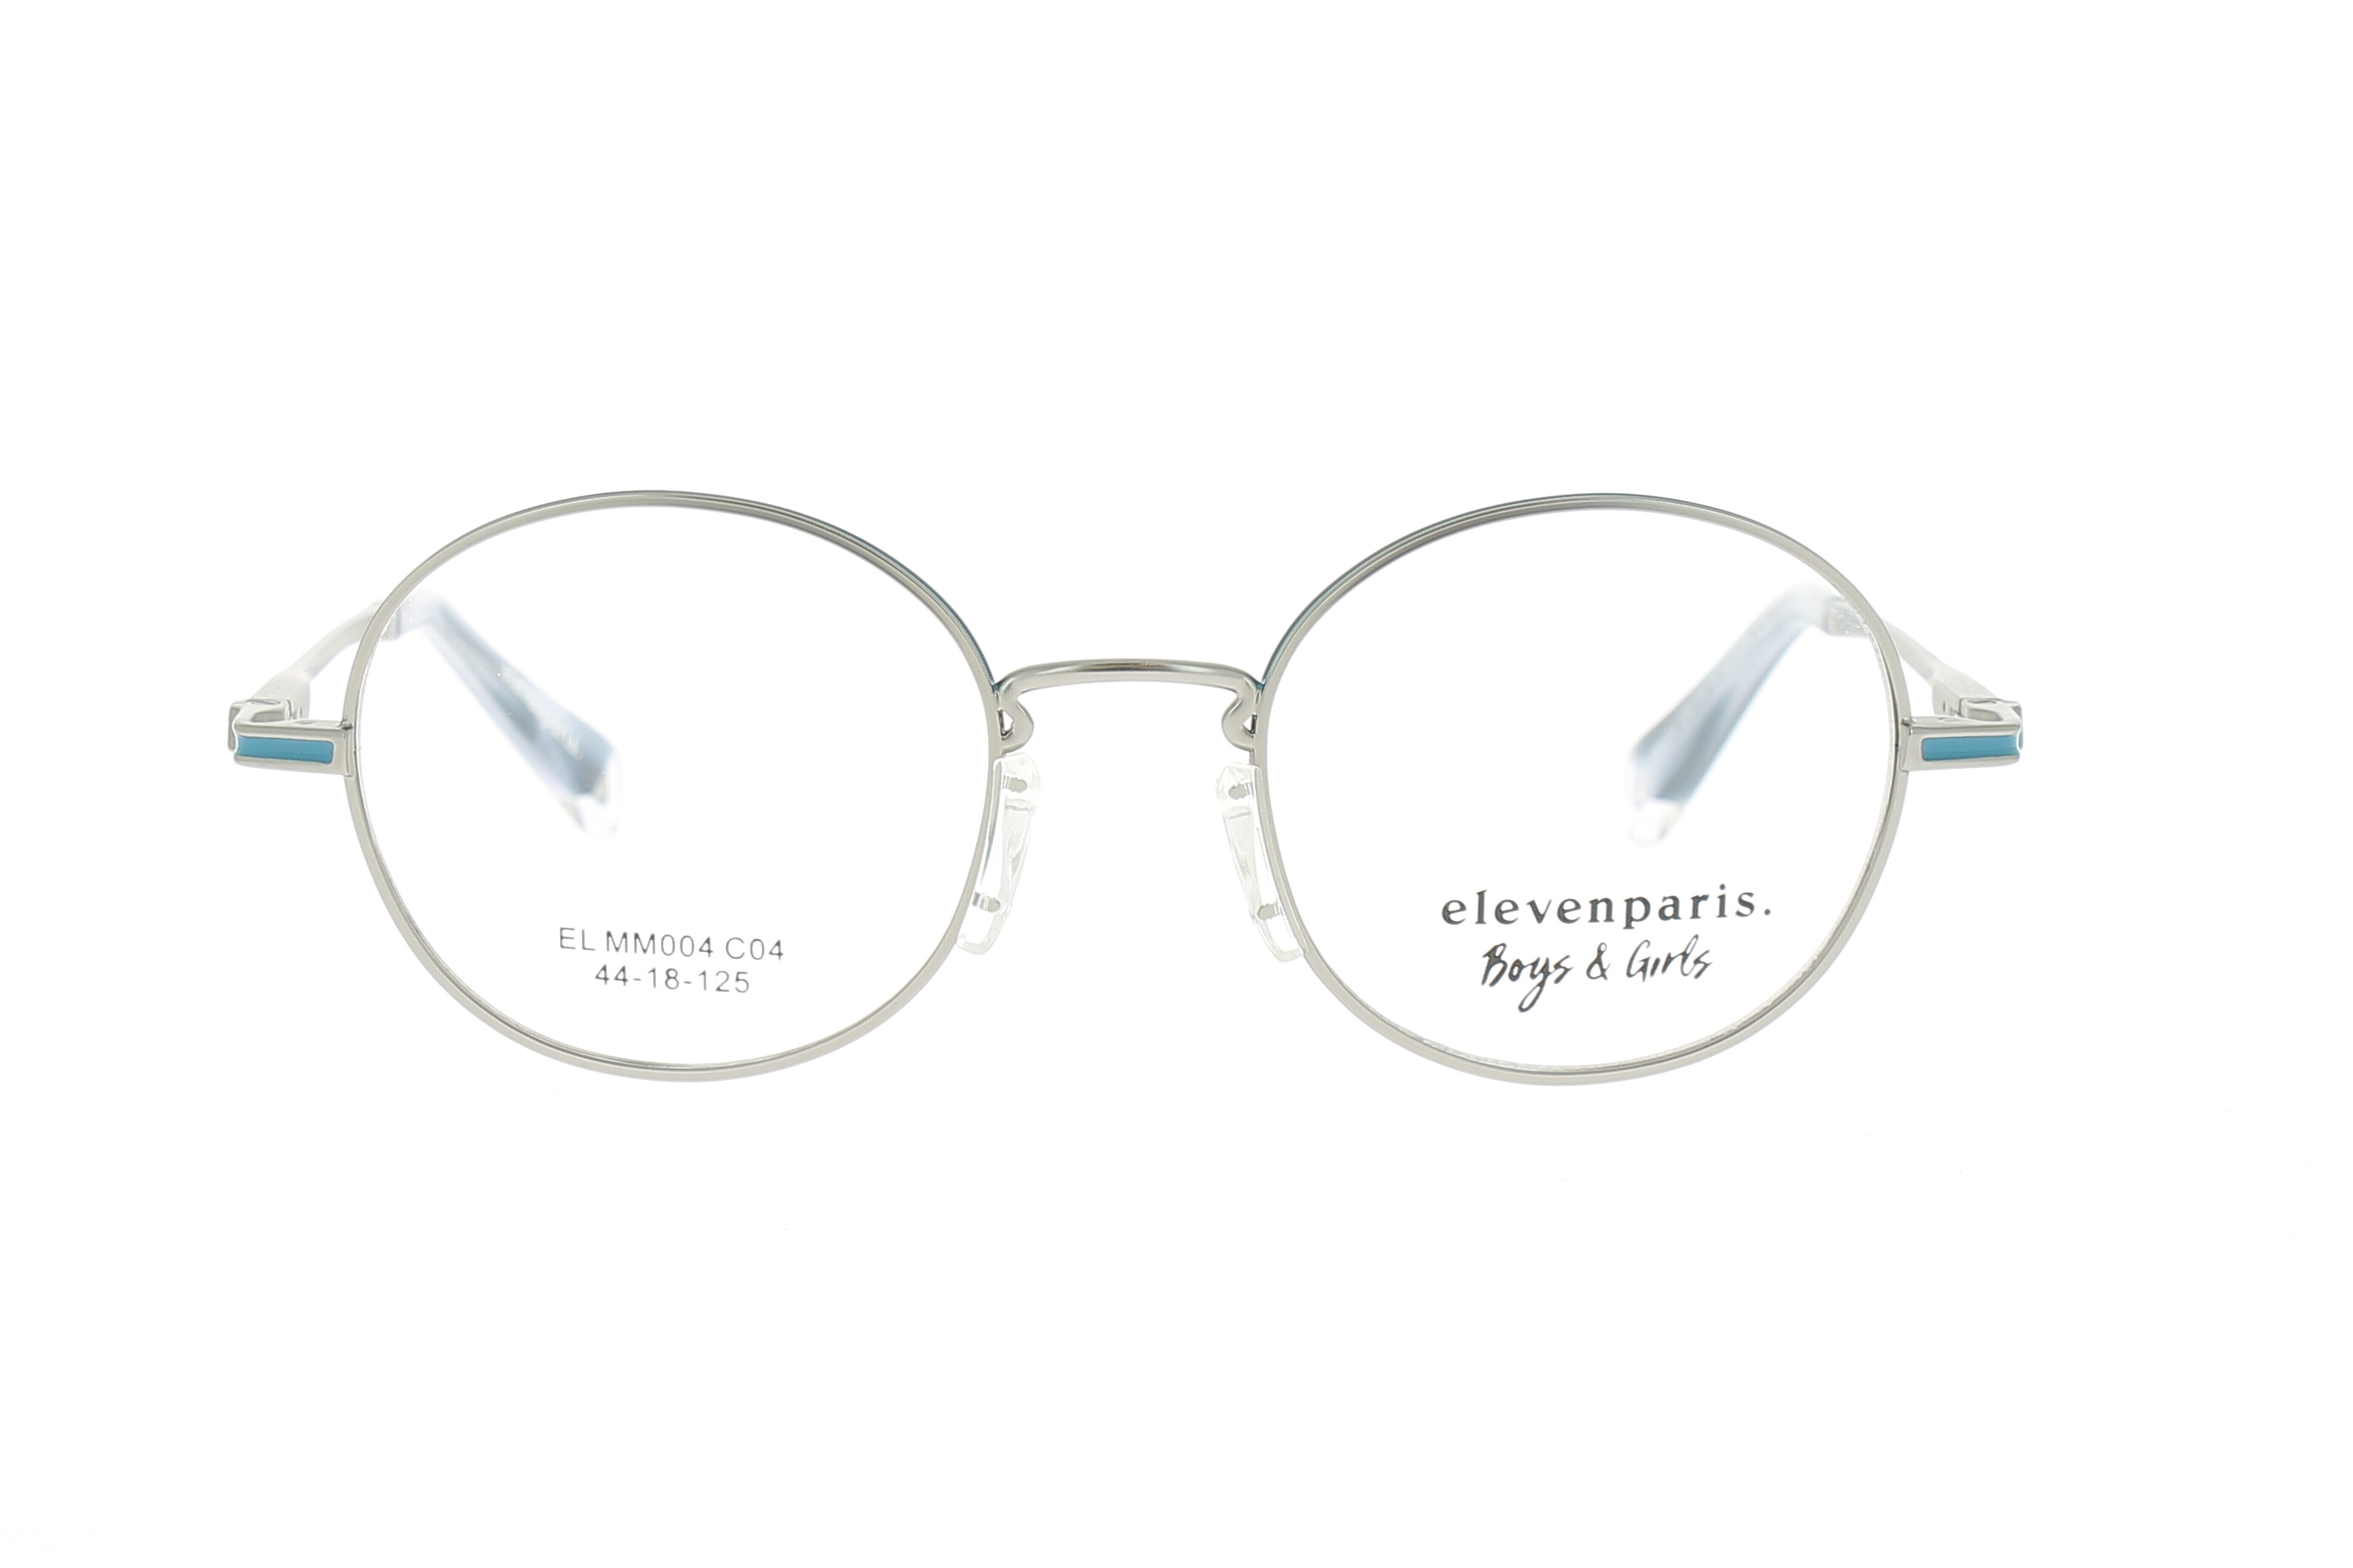 Paire de lunettes de vue Little-eleven-paris Elmm004 couleur bleu - Doyle